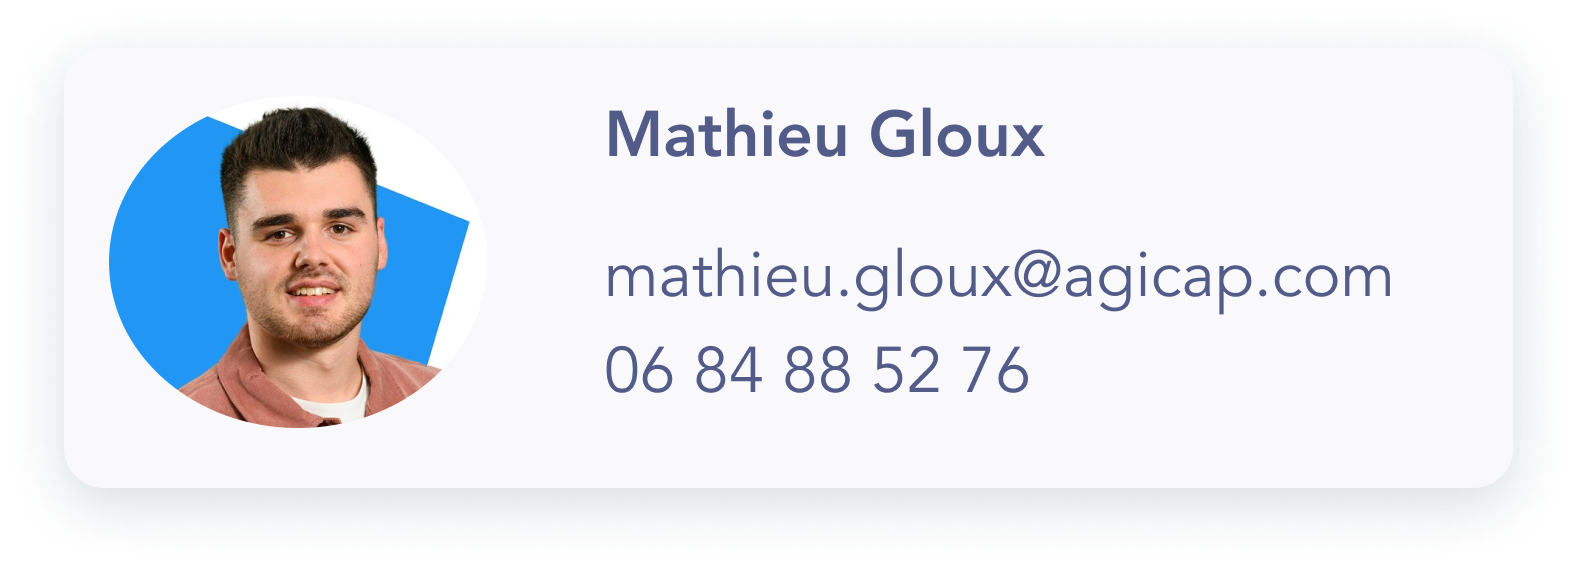 Contact Mathieu Gloux